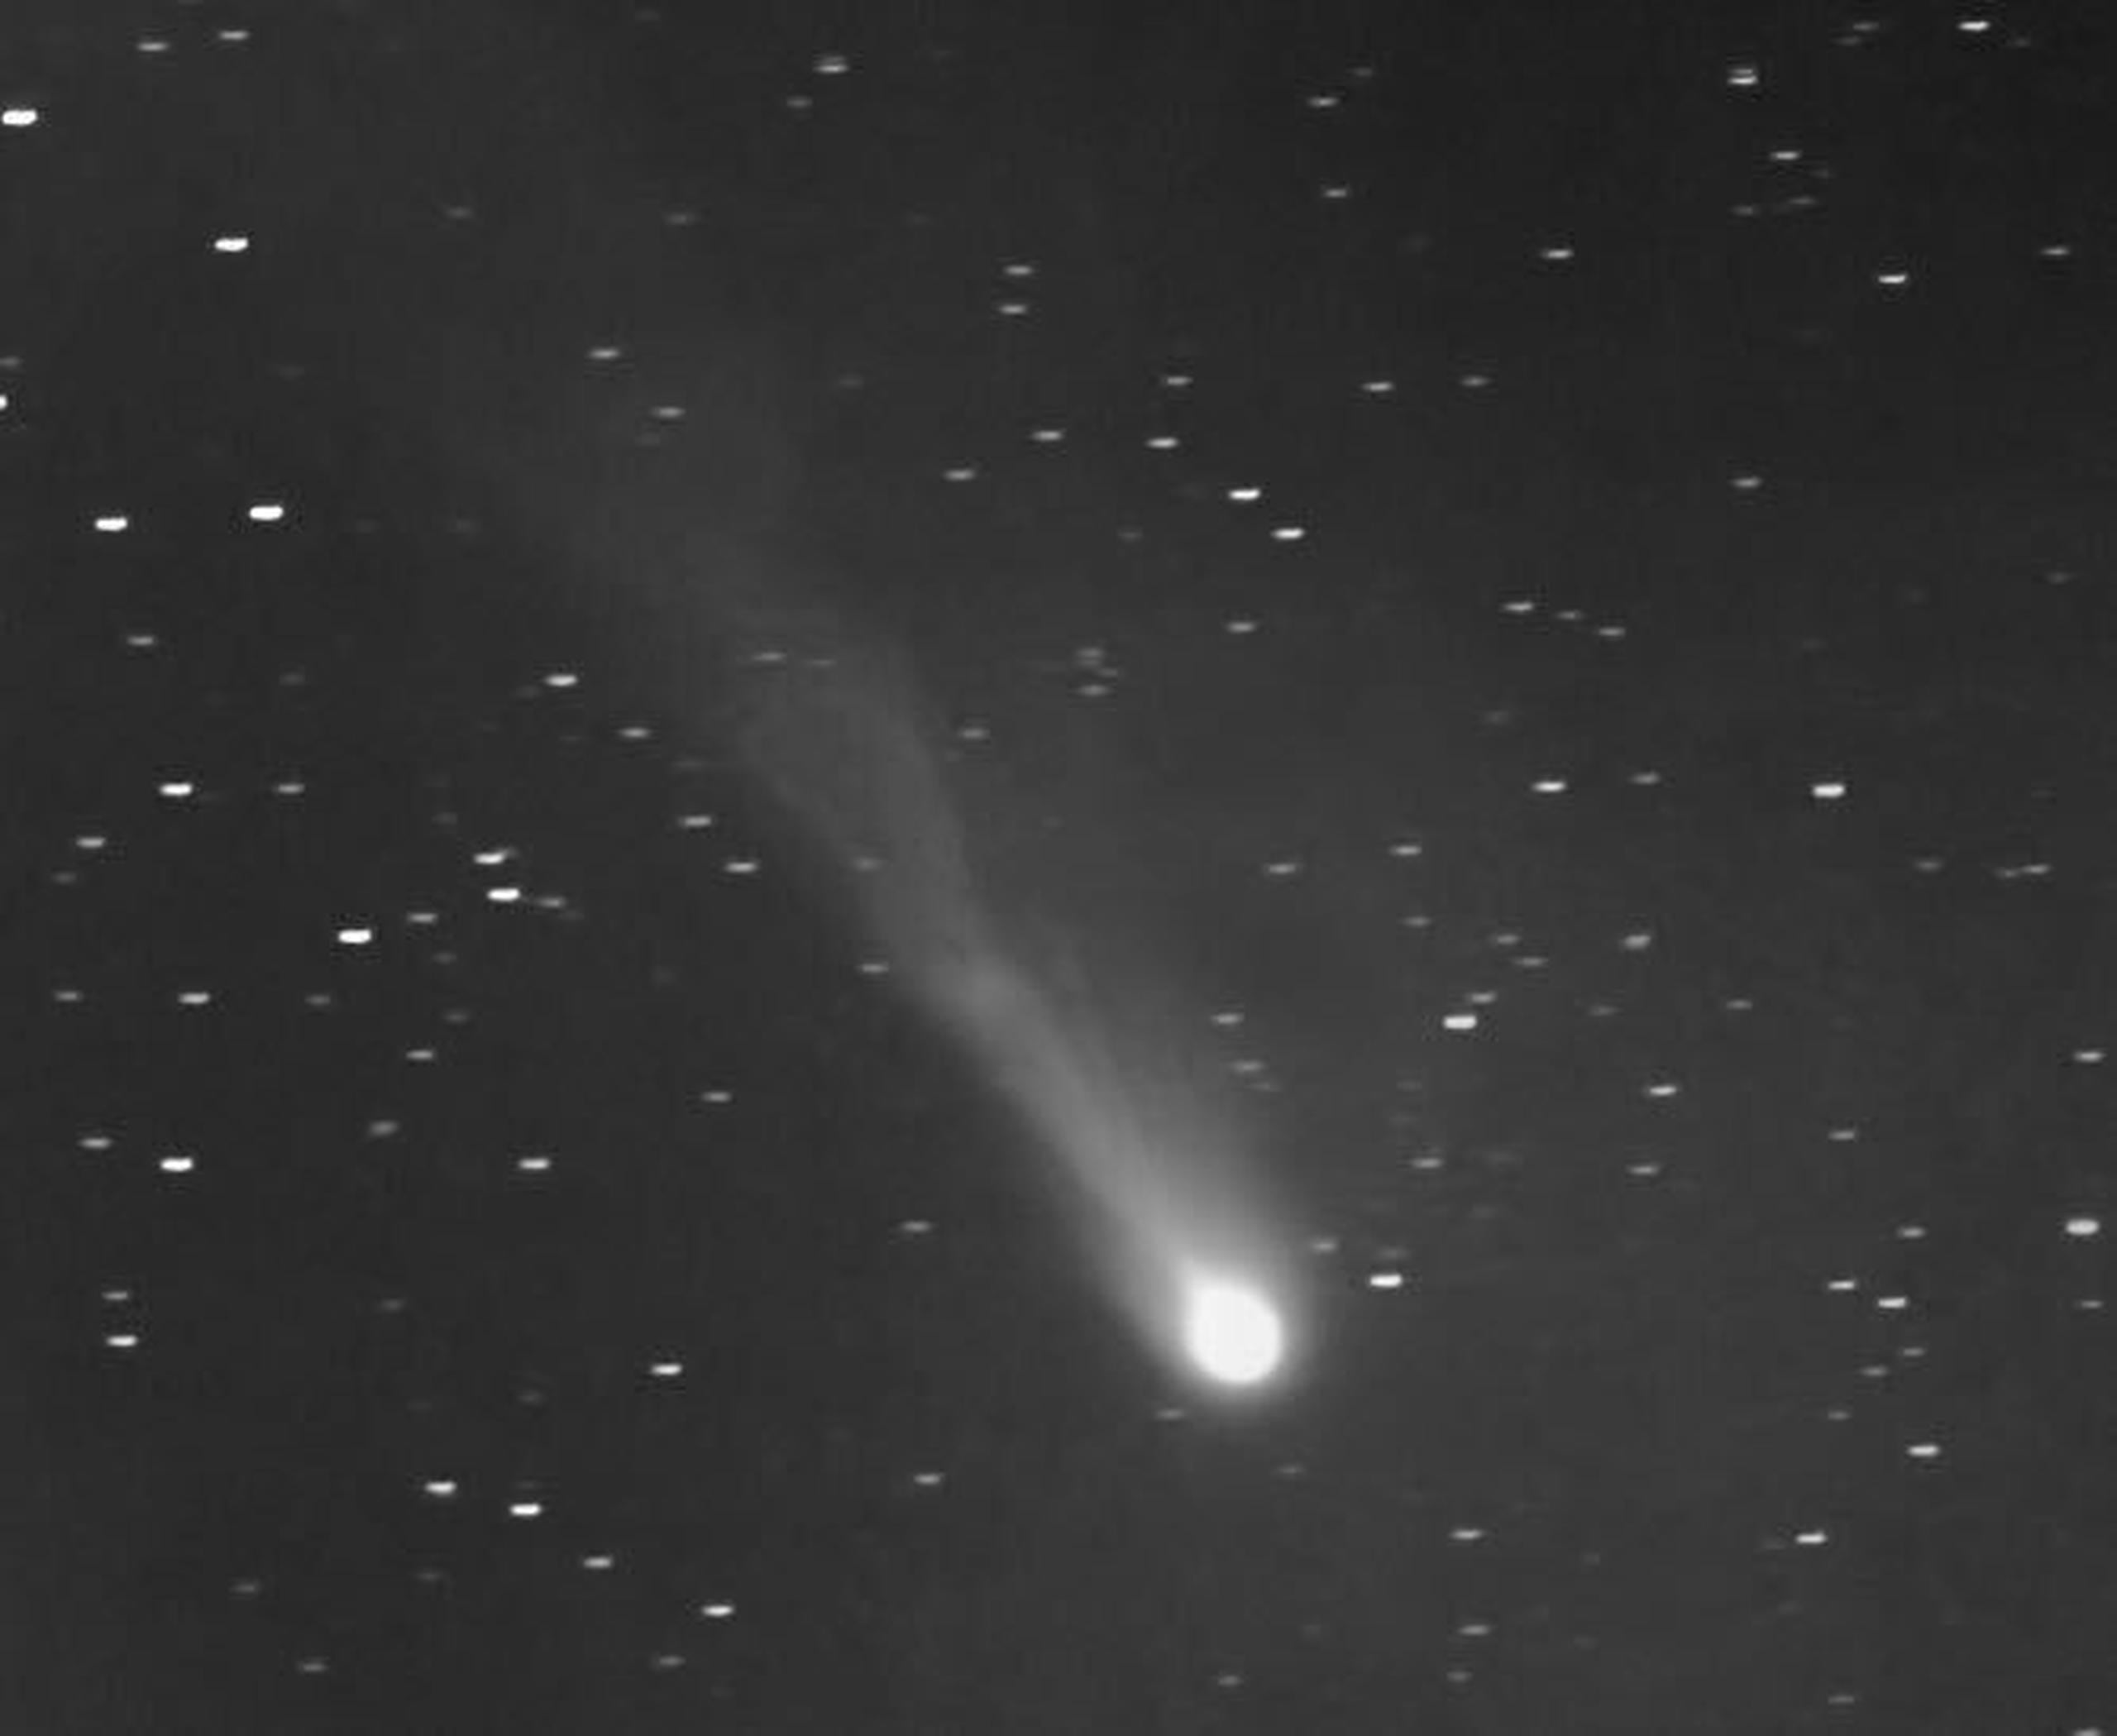 Observadores con binoculares o cámaras con capacidad de obtener imágenes de varios segundos de exposición, pueden intentar dar un vistazo al cometa 12P, entre las 7:20 y 7:50 pm, un poco más abajo y a la derecha del brillante planeta Júpiter.